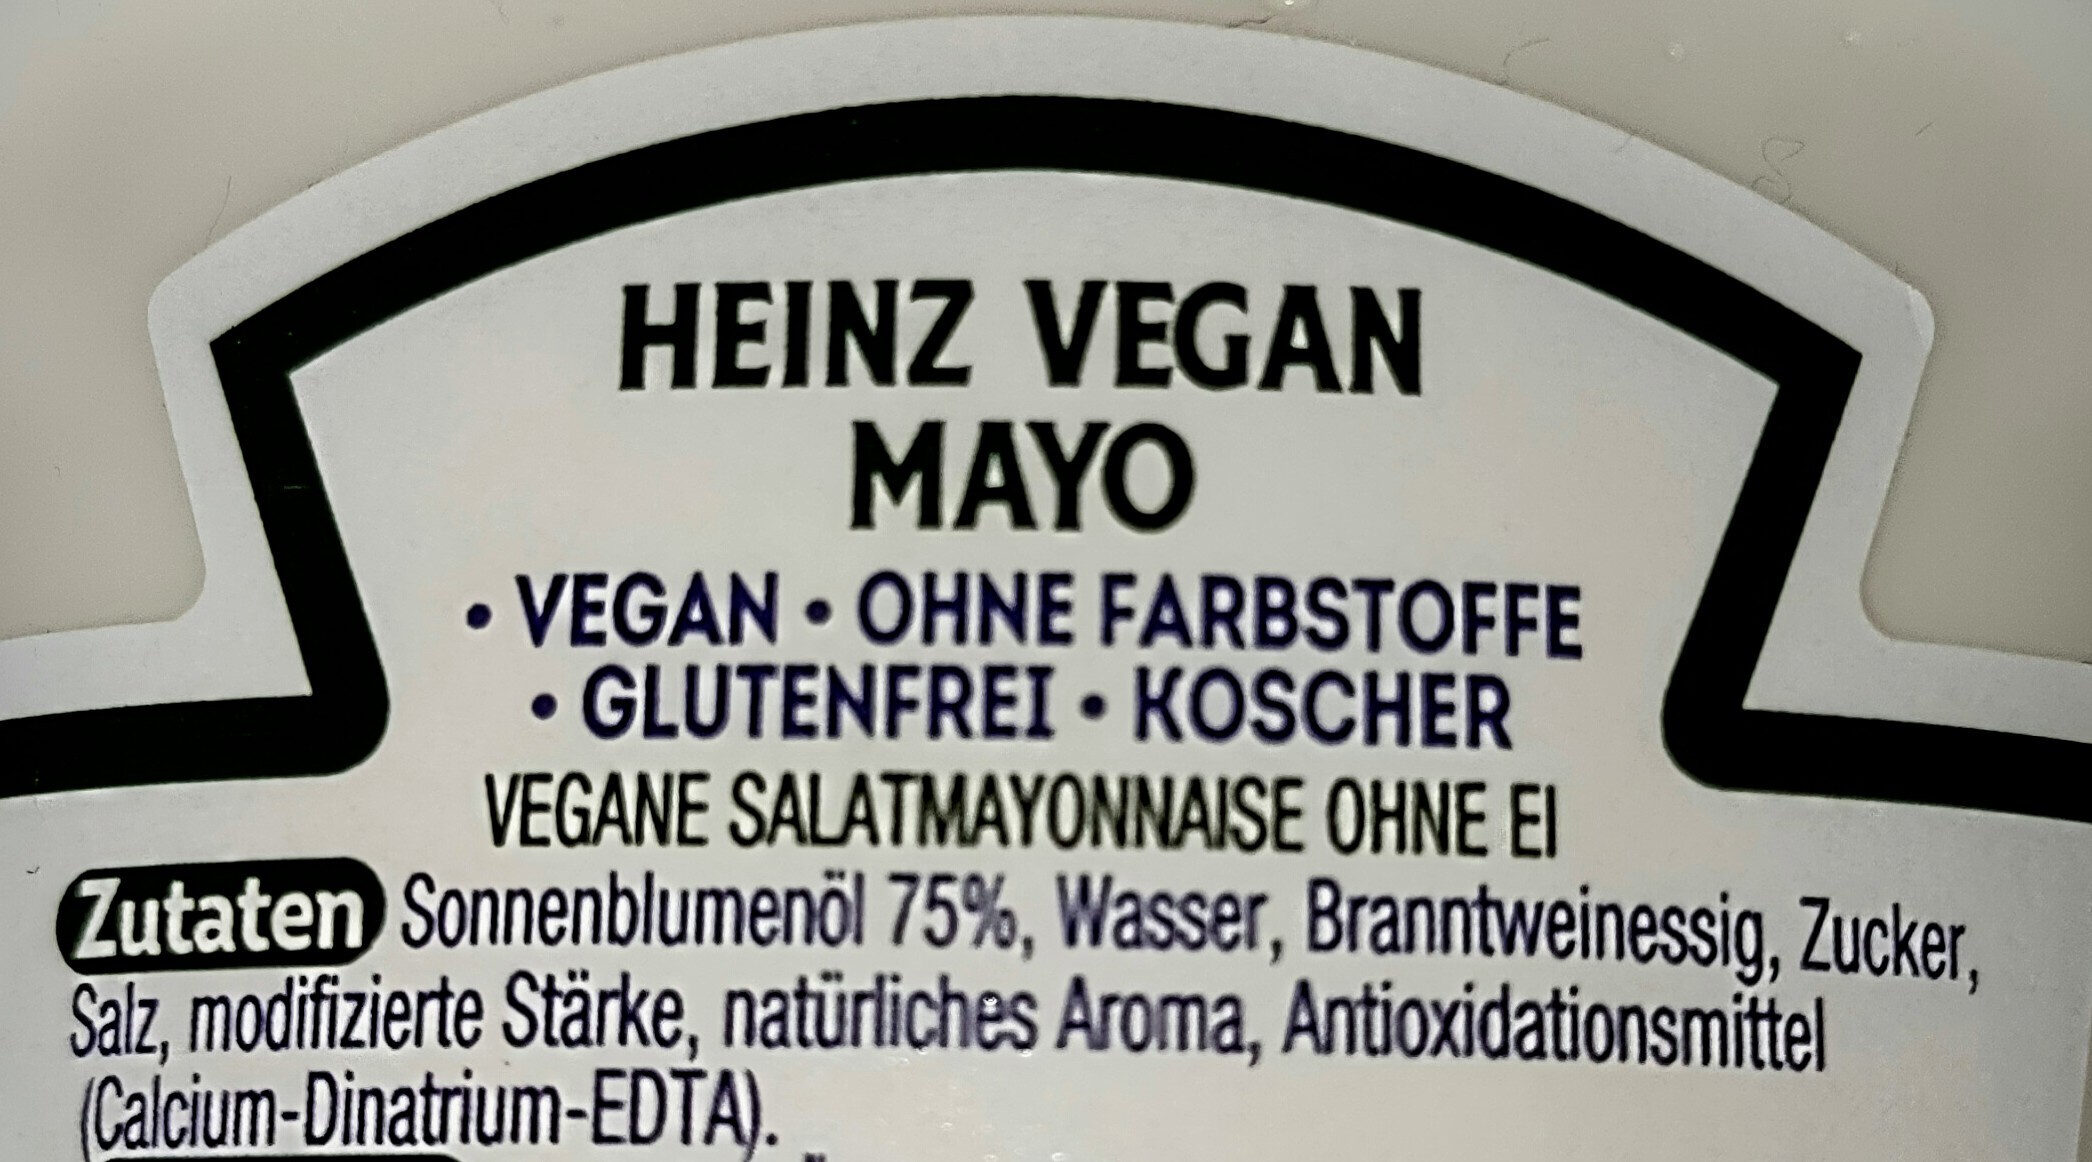 Mayo Vegan - Zutaten